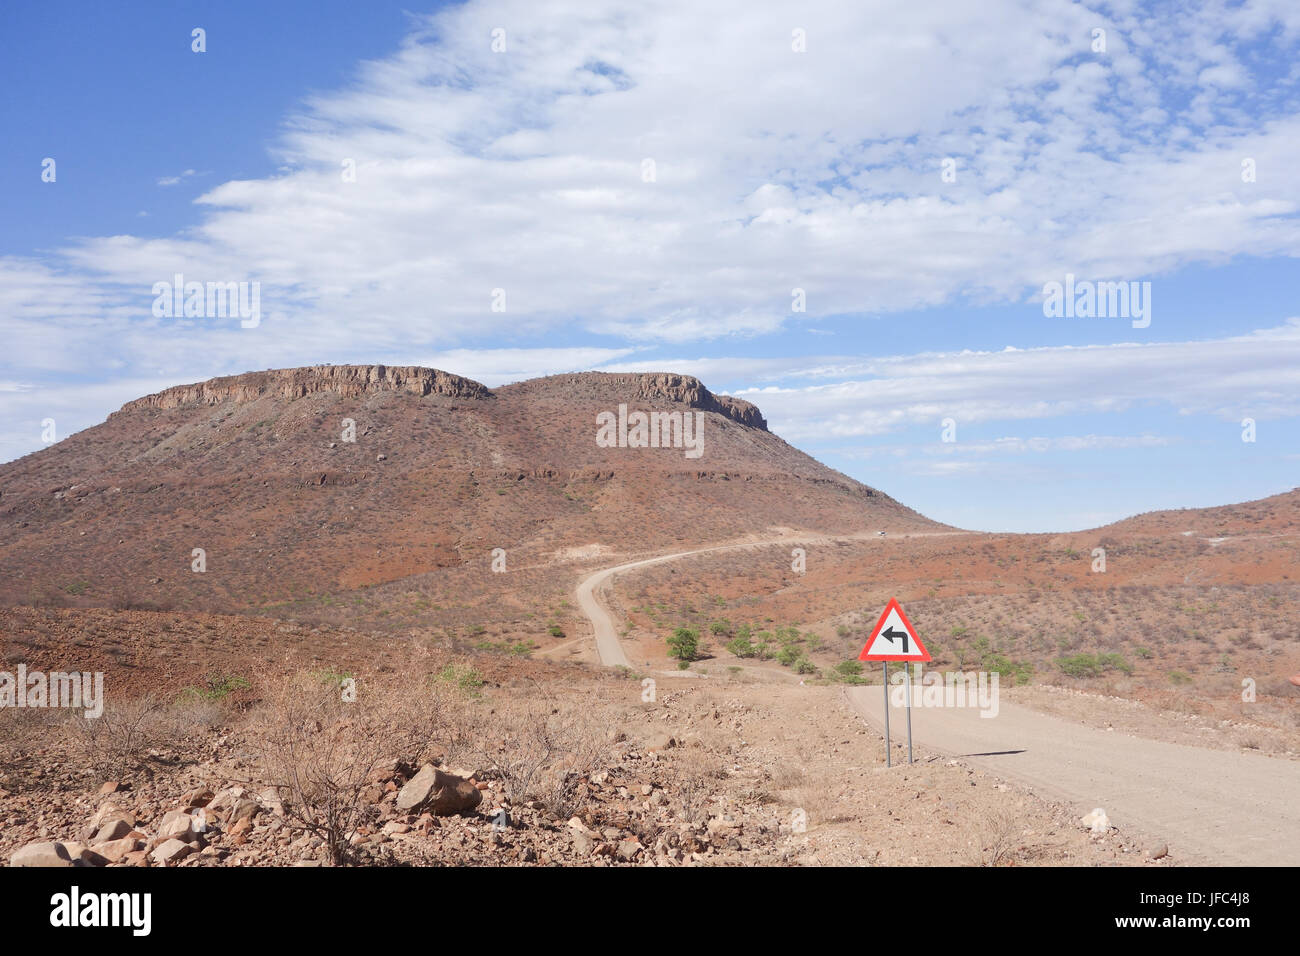 Namibian landscape Stock Photo